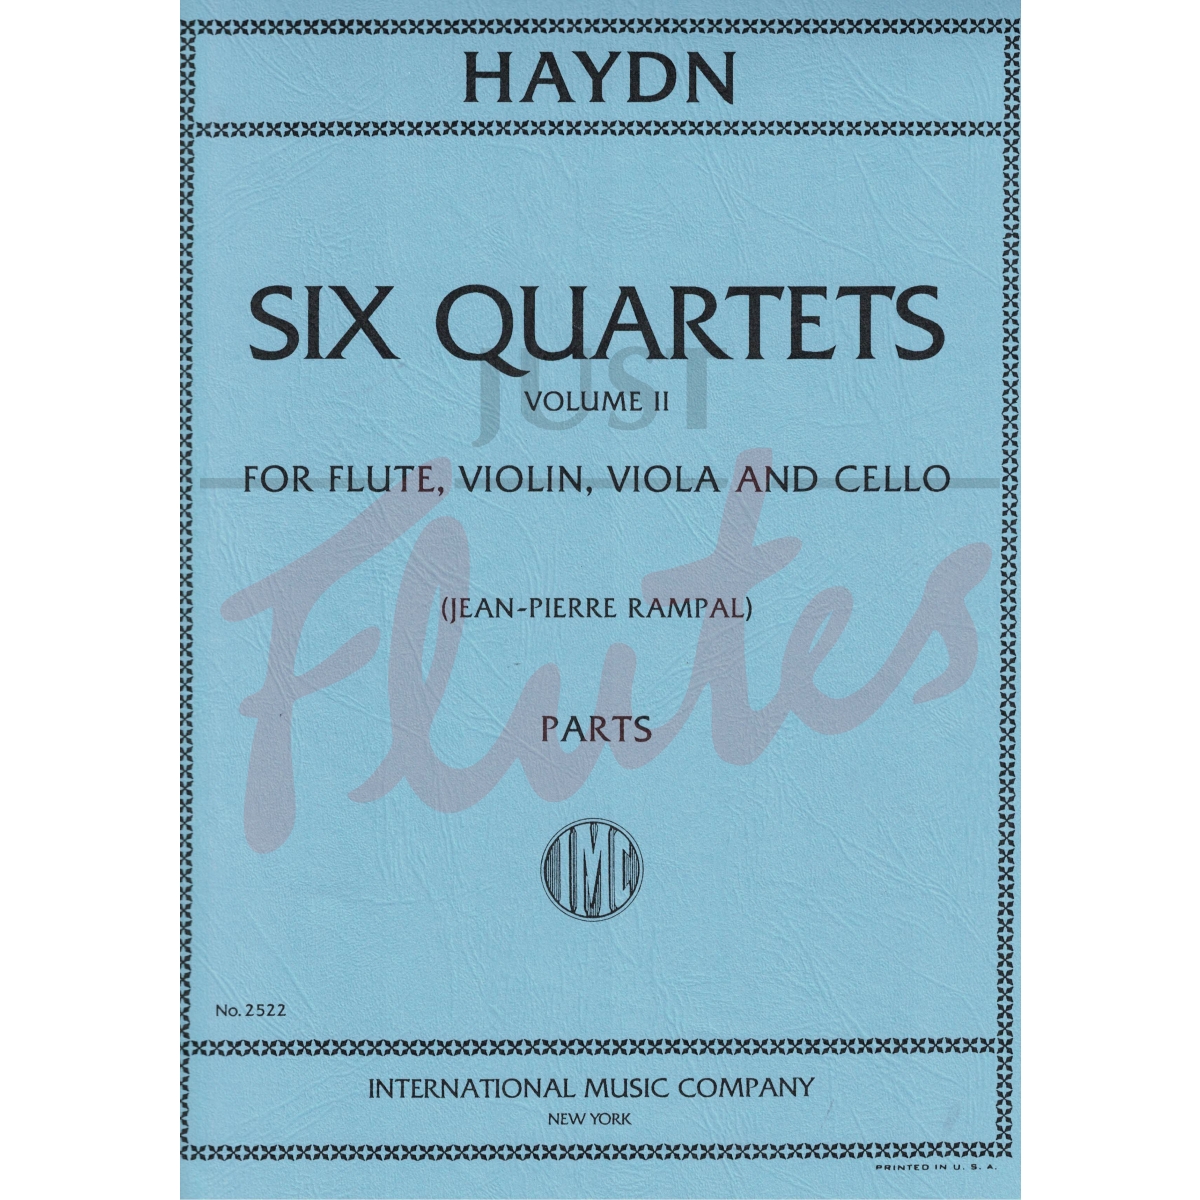 Six Quartets for Flute and String Trio